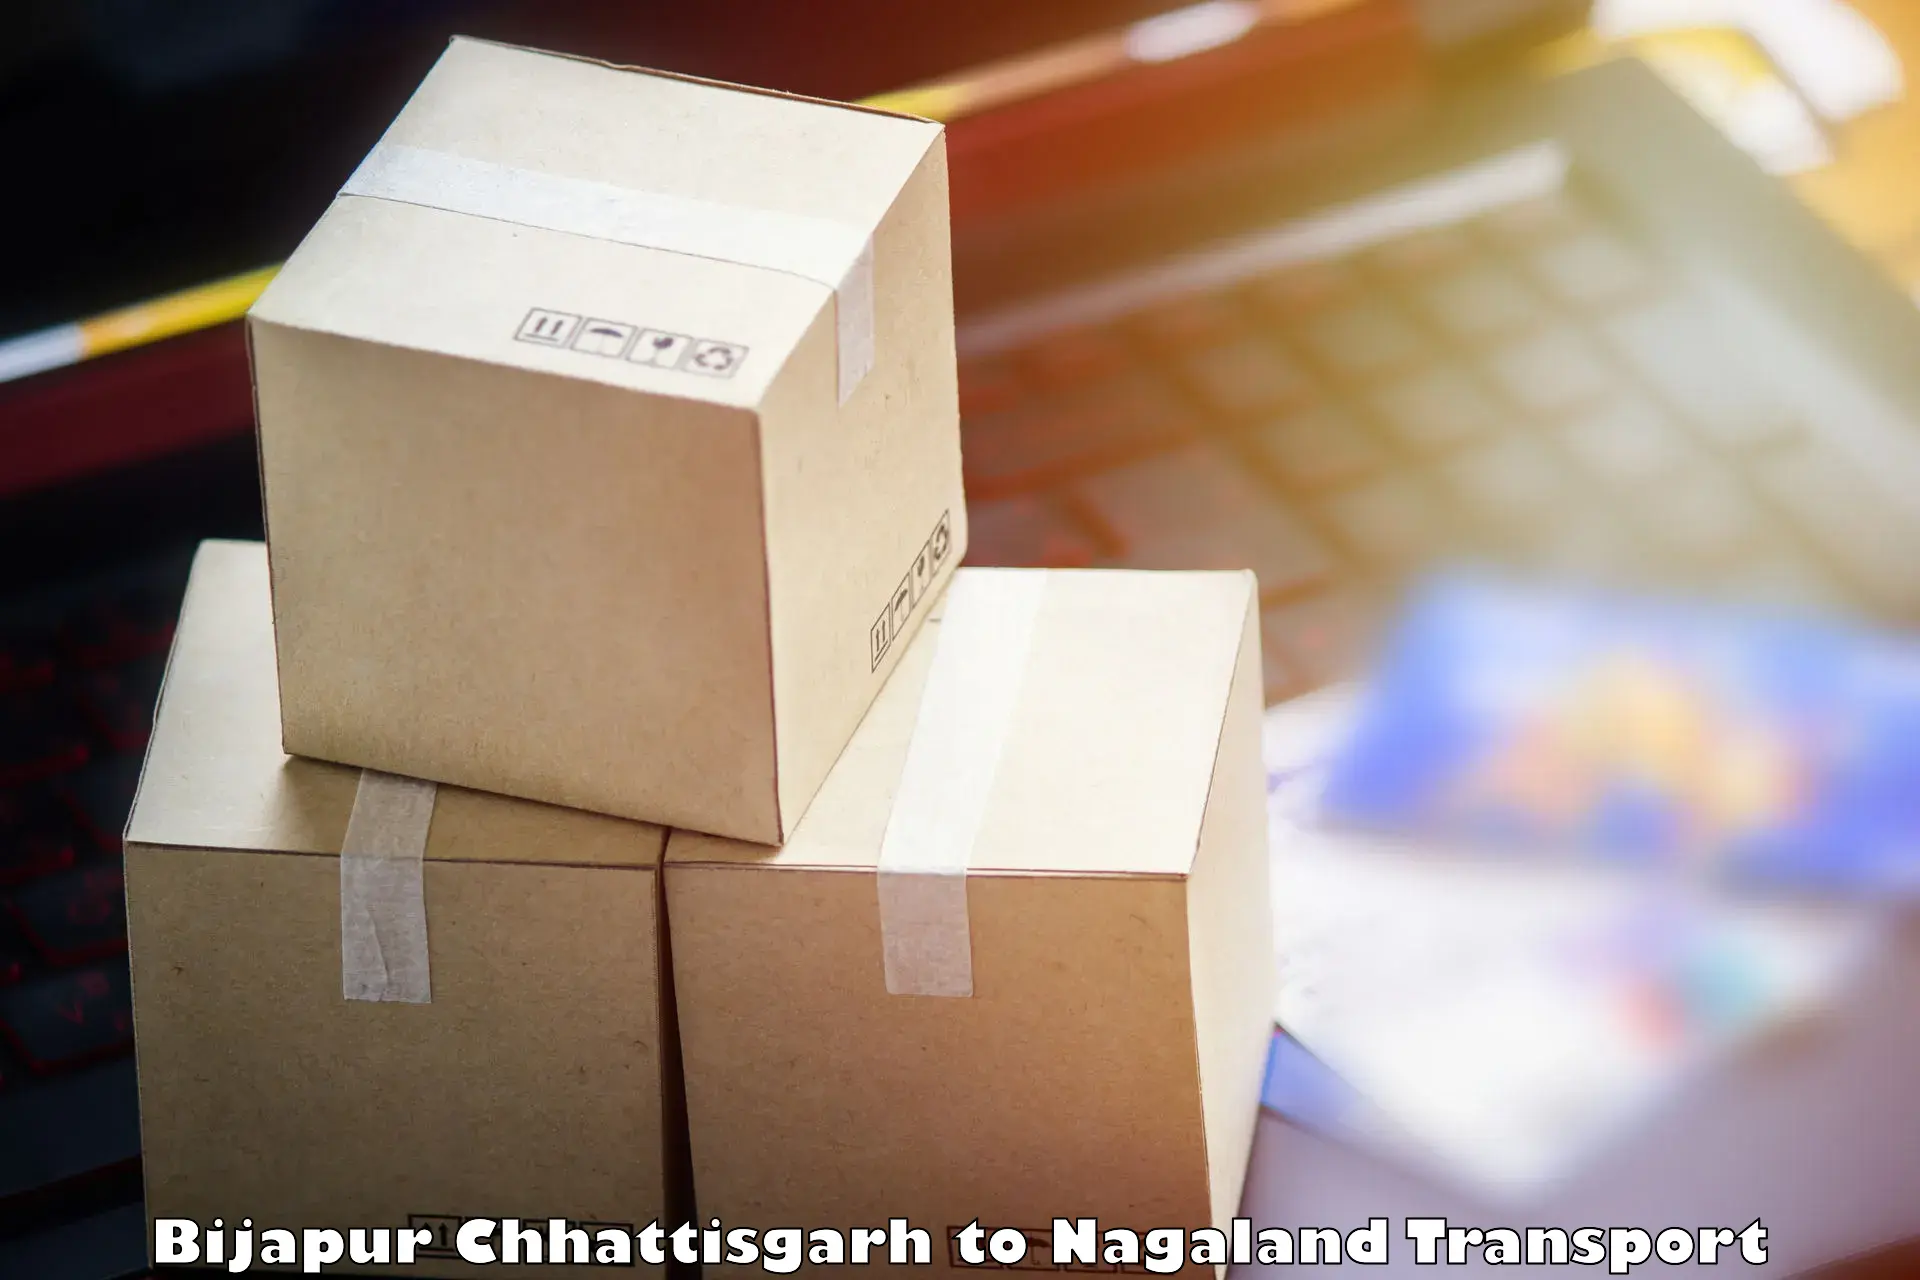 Road transport online services Bijapur Chhattisgarh to Mon